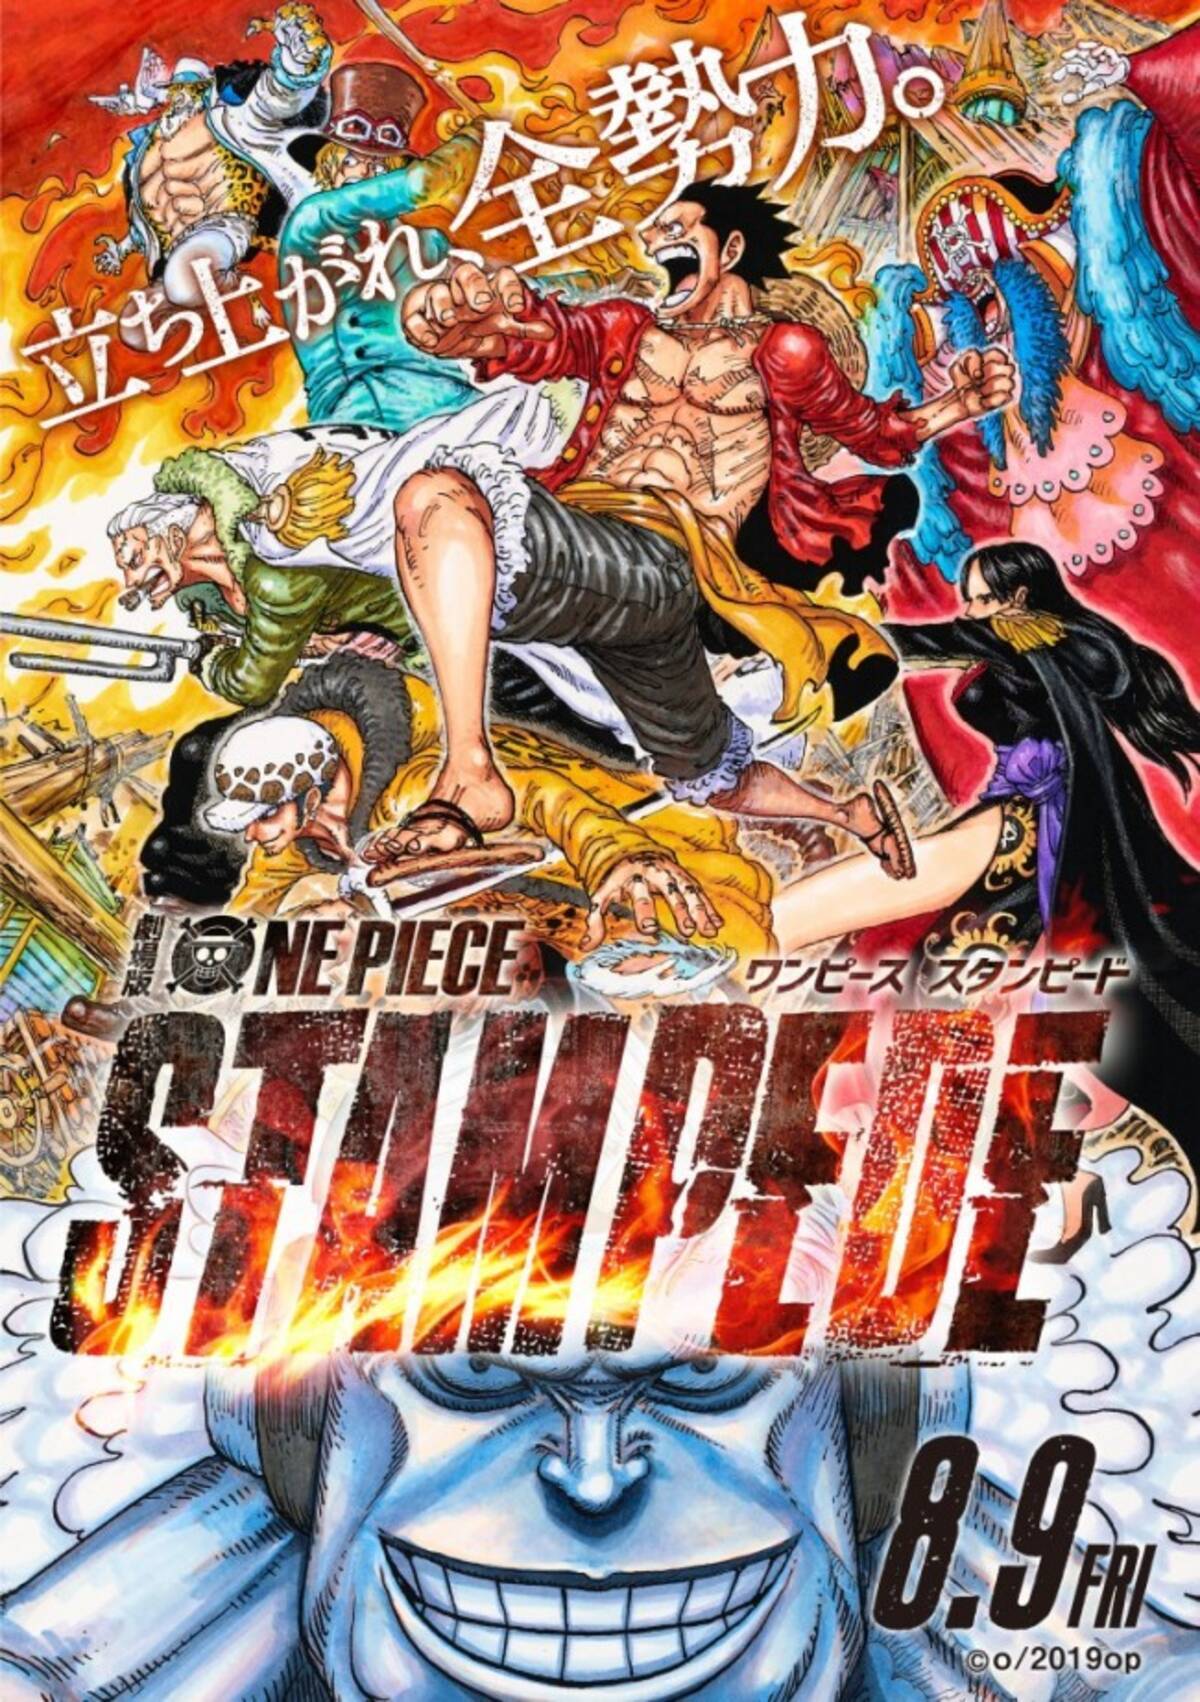 劇場版 One Piece Stampede バスターコール発動 本予告解禁 19年6月27日 エキサイトニュース